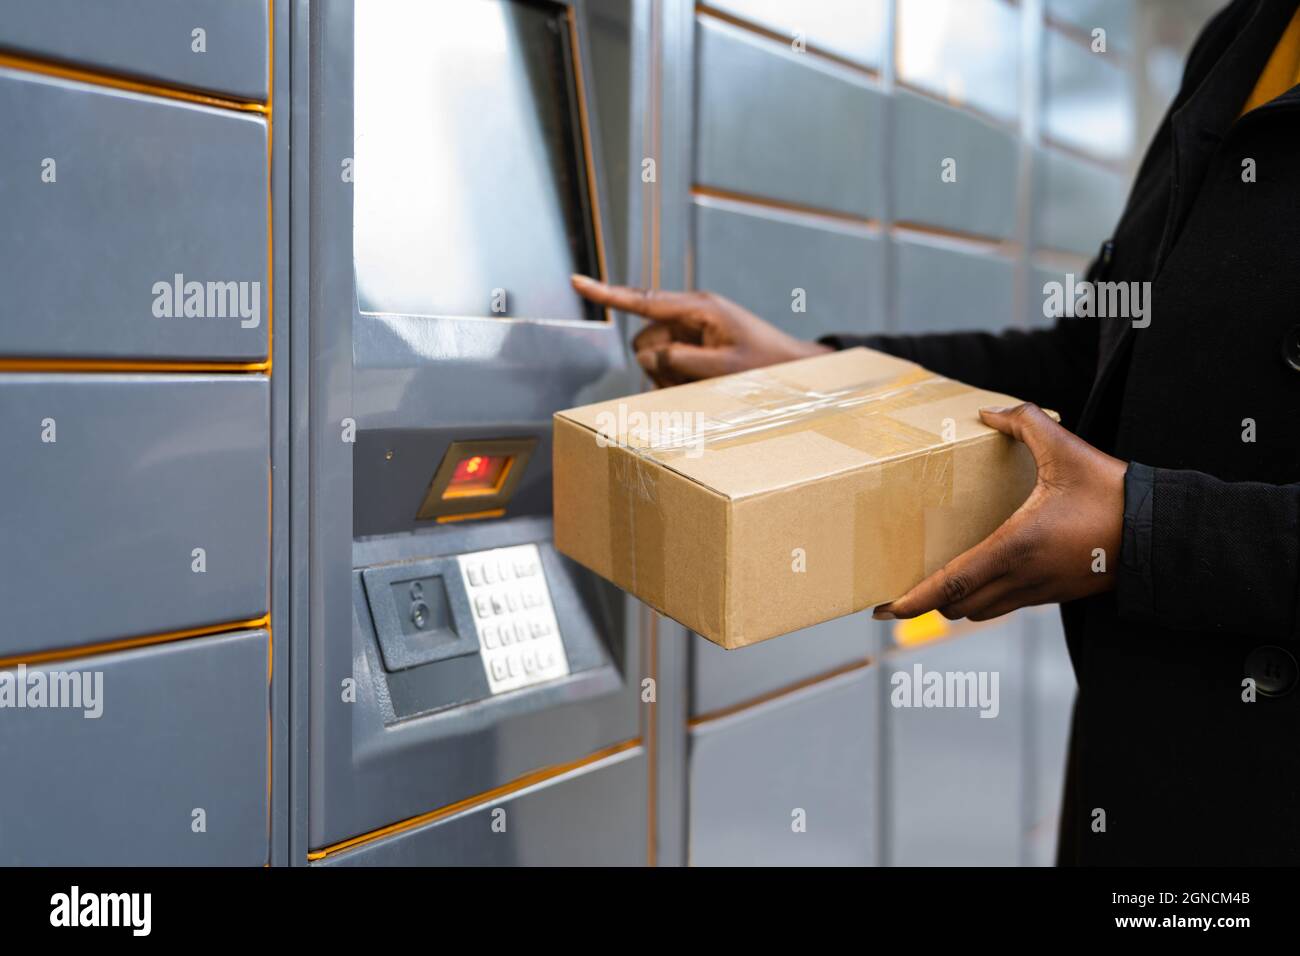 Machine de livraison automatisée en libre-service ou terminal postal Banque D'Images